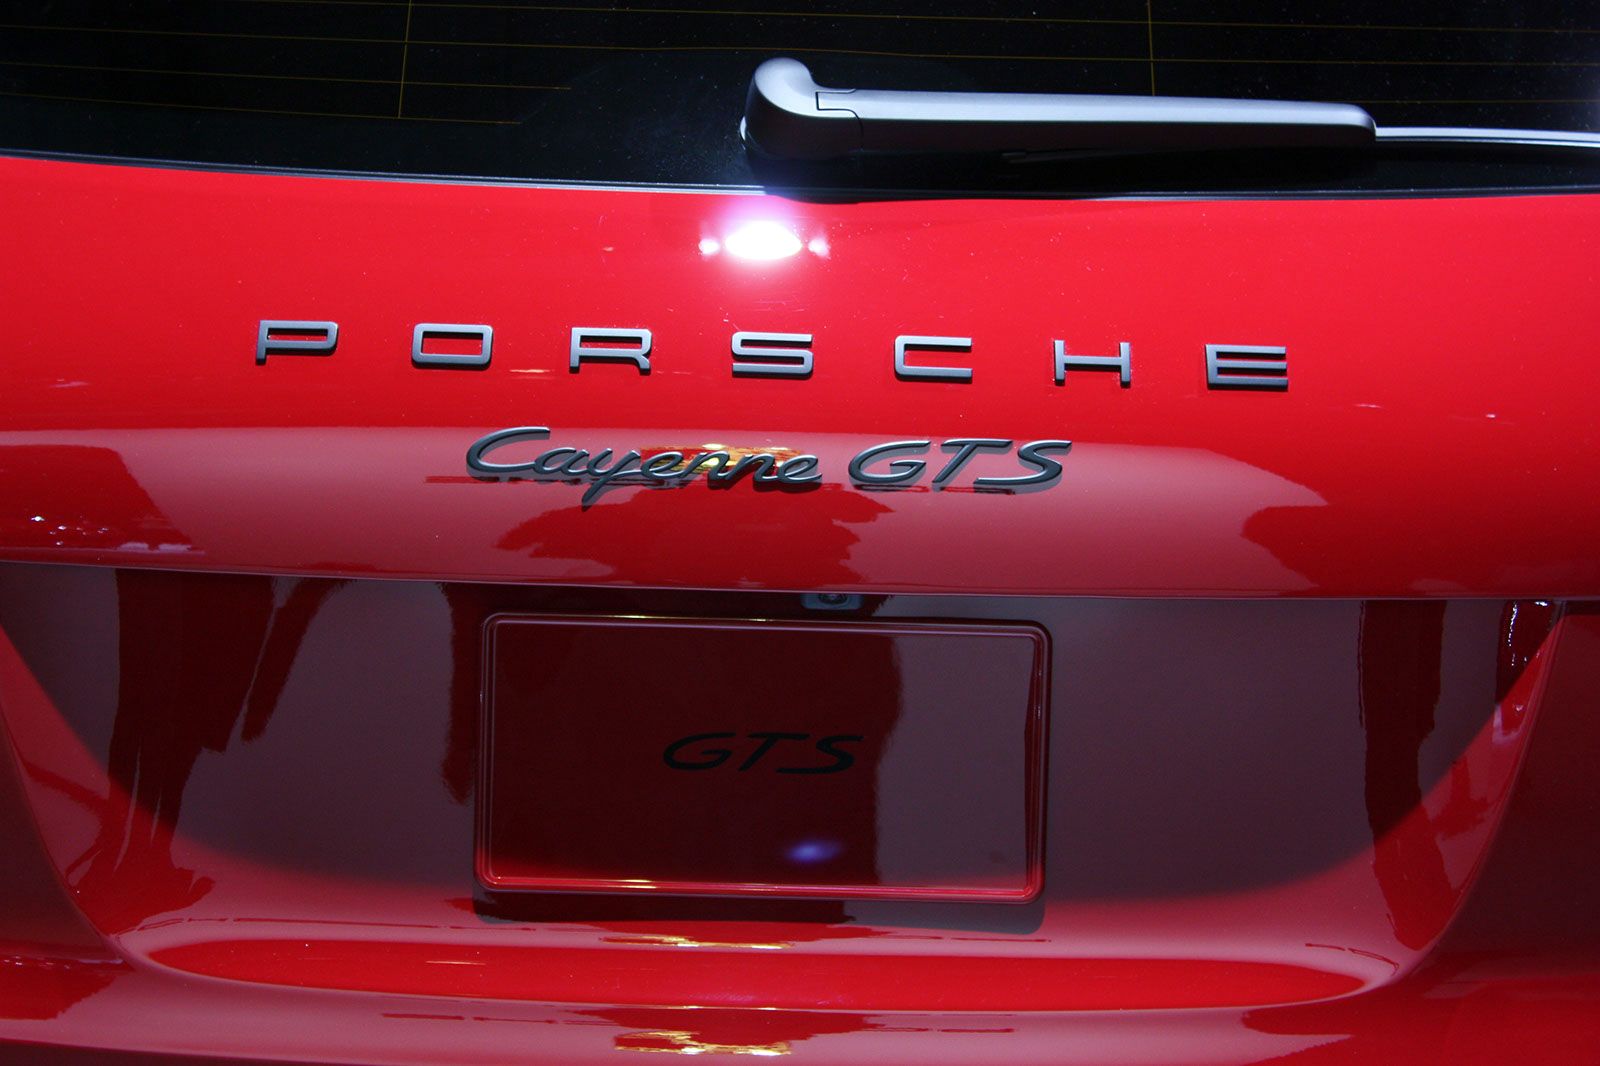 2015 Porsche Cayenne GTS